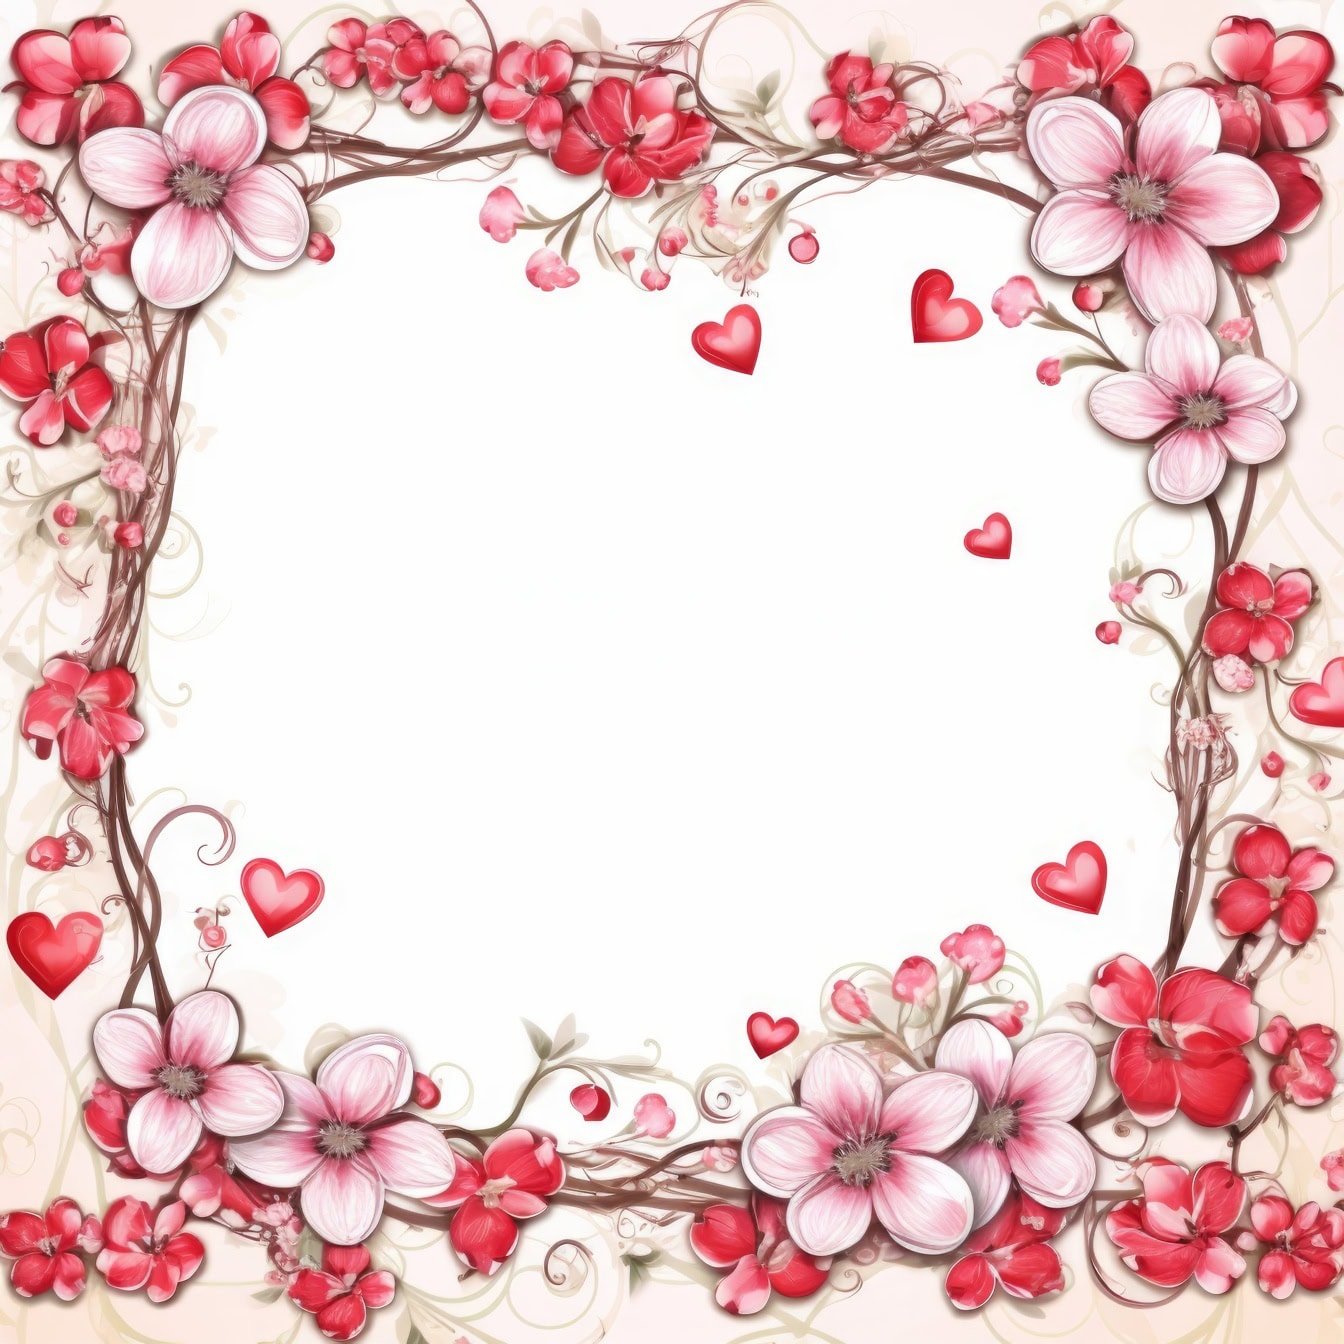 Ρομαντικό πρότυπο ευχετήριας κάρτας με πλαίσιο λουλουδιών και καρδιών σε ροζ τόνους